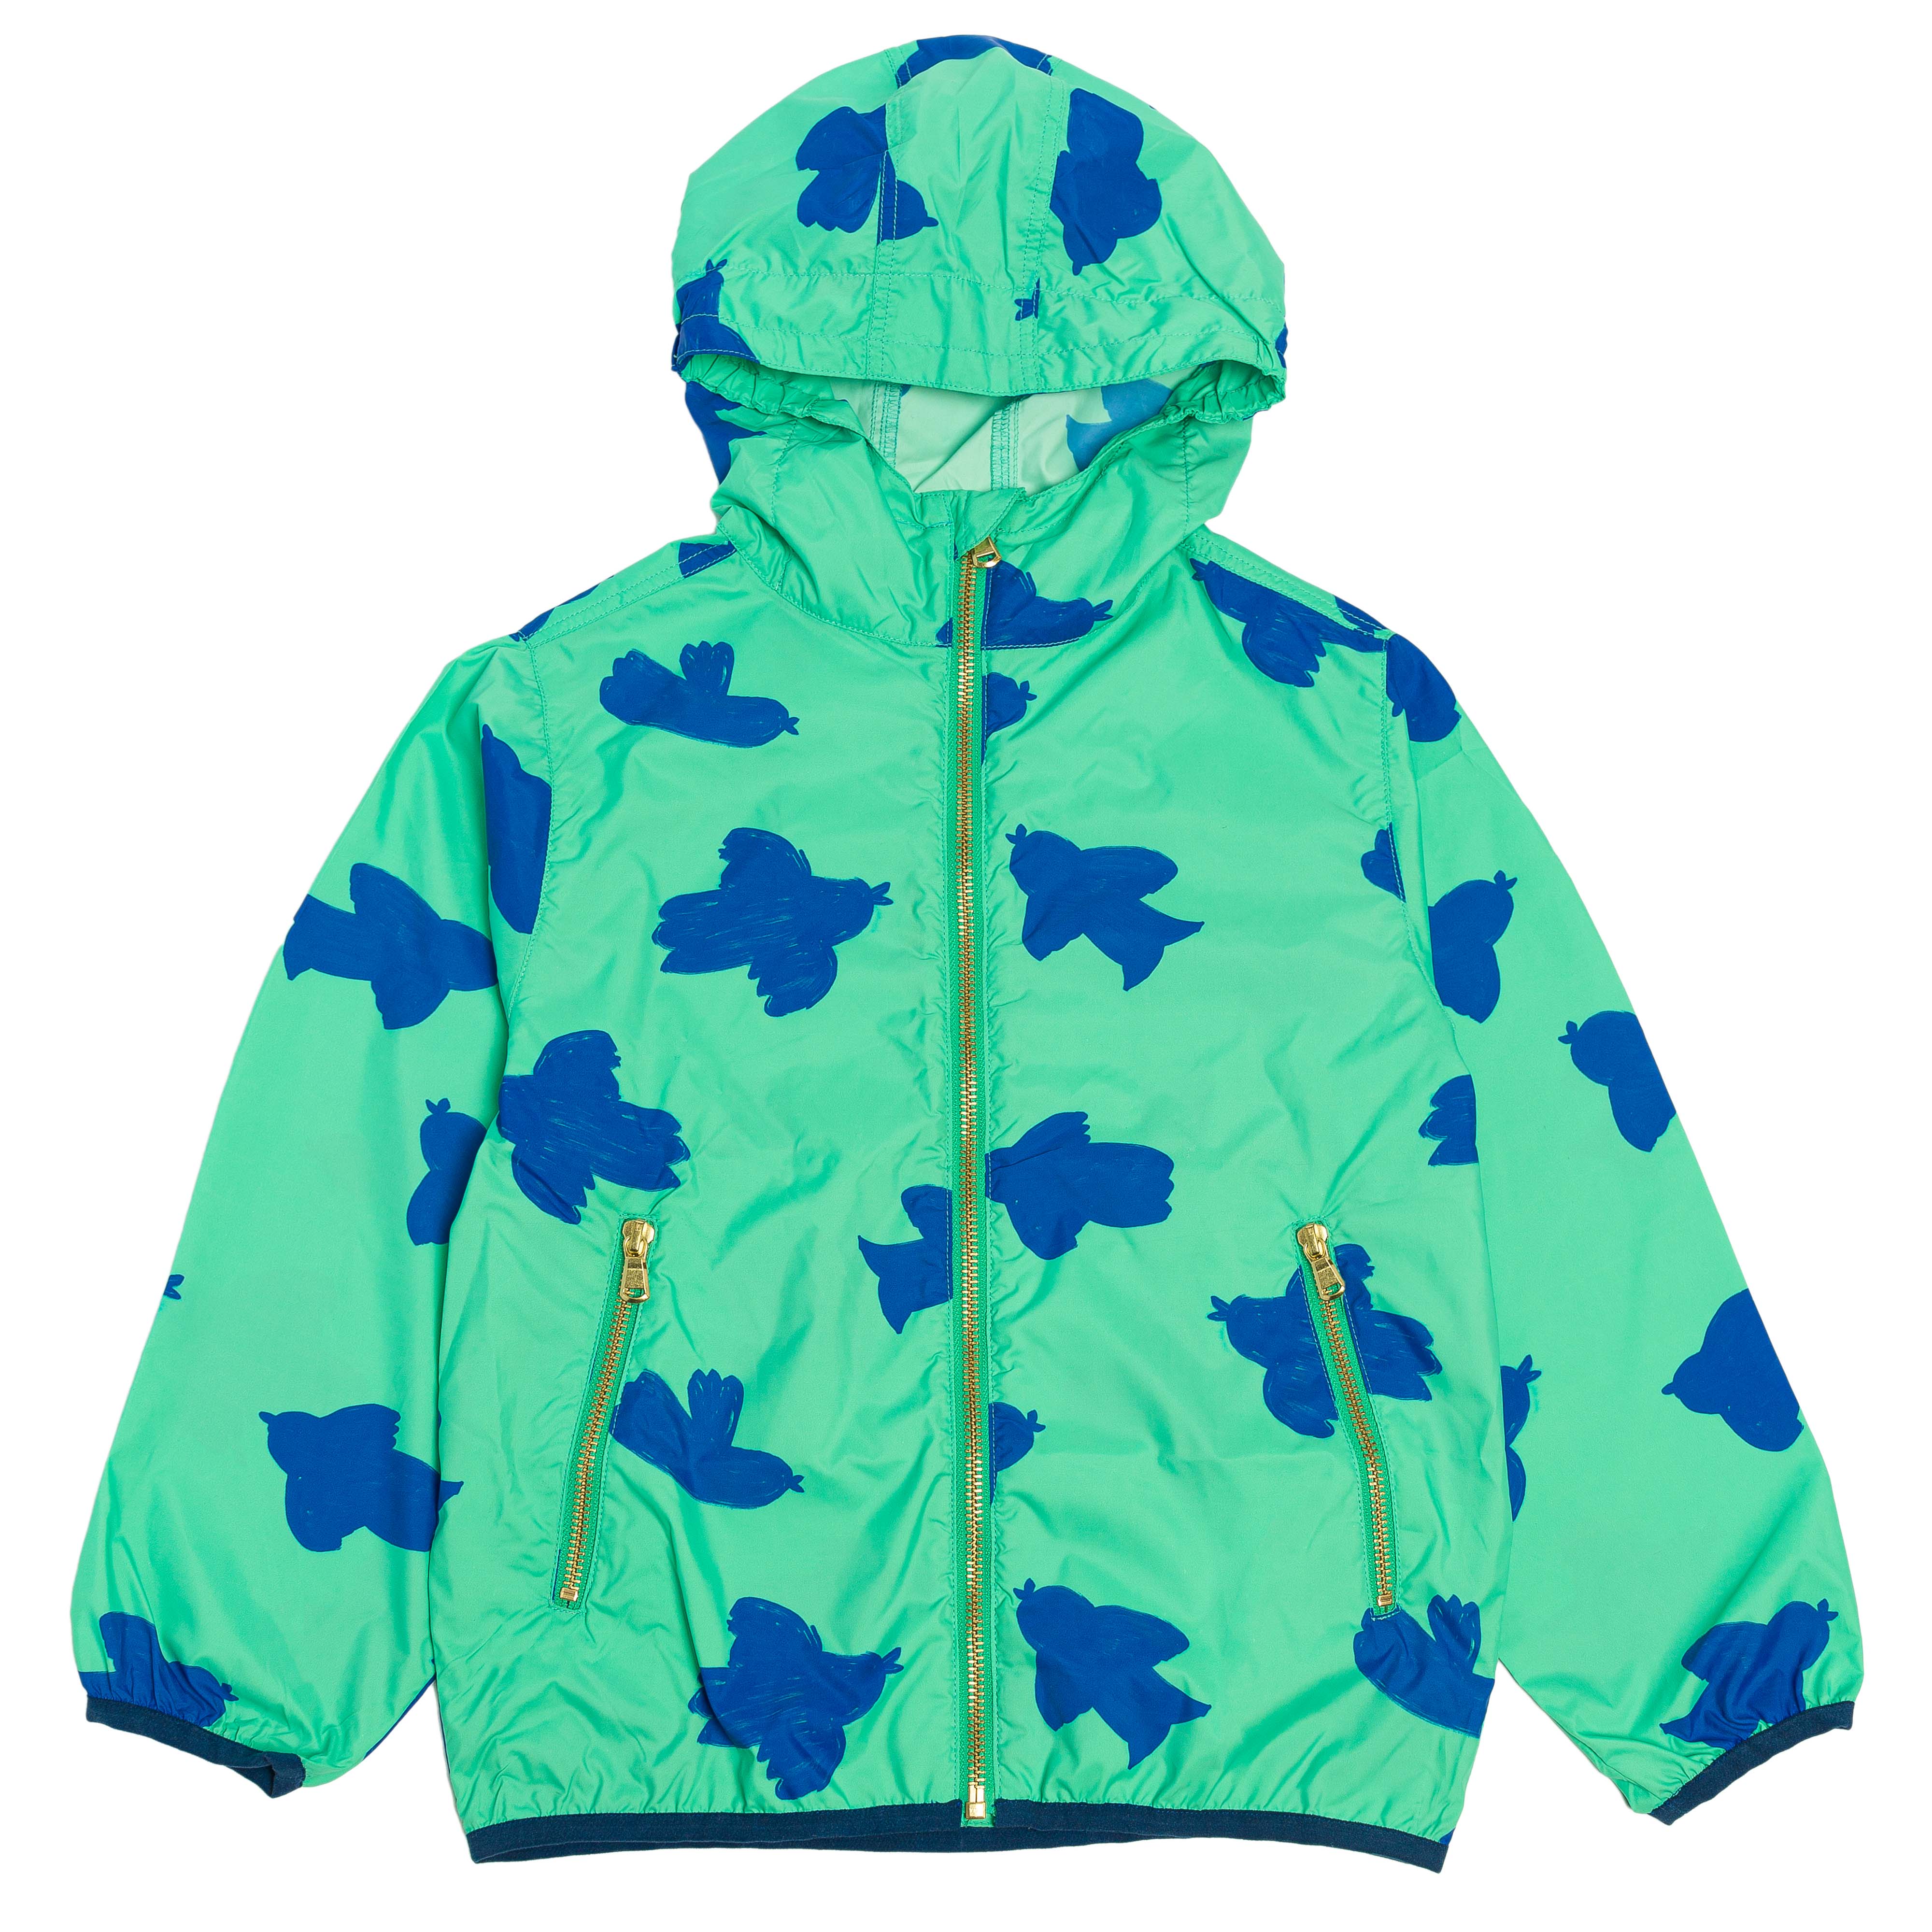 Coupe-vent à capuche et poches pour enfant en coton mixte unisexe style vintage imprimé vert motif oiseau bleu, vue recto